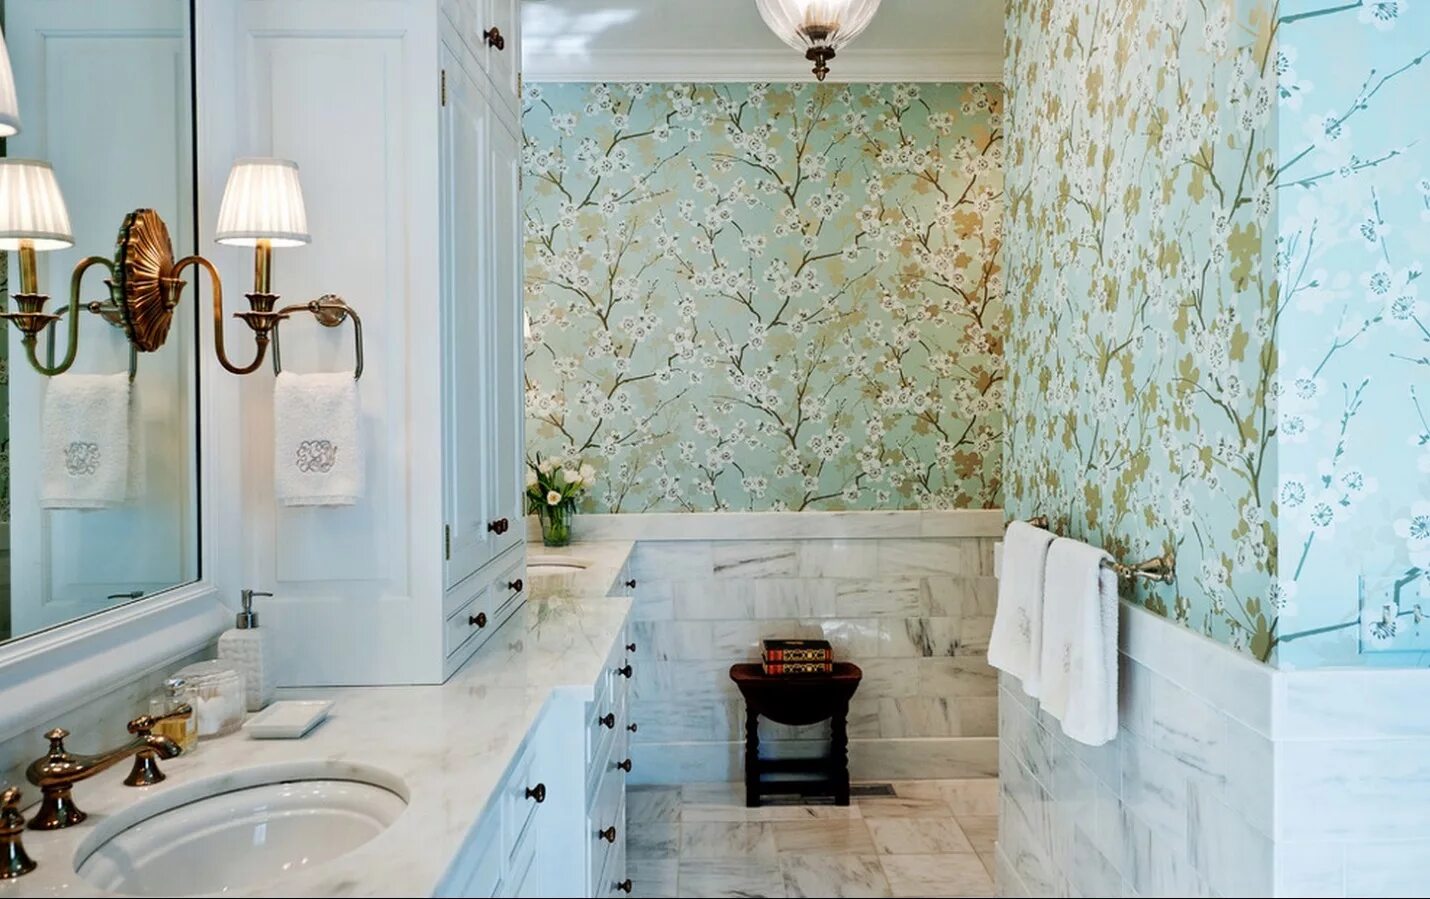 Отделка стен в ванной комнате. Интерьер ванной комнаты. Ванная комната с растениями. Обои в интерьере ванной комнаты. Что можно вместо плитки в ванной